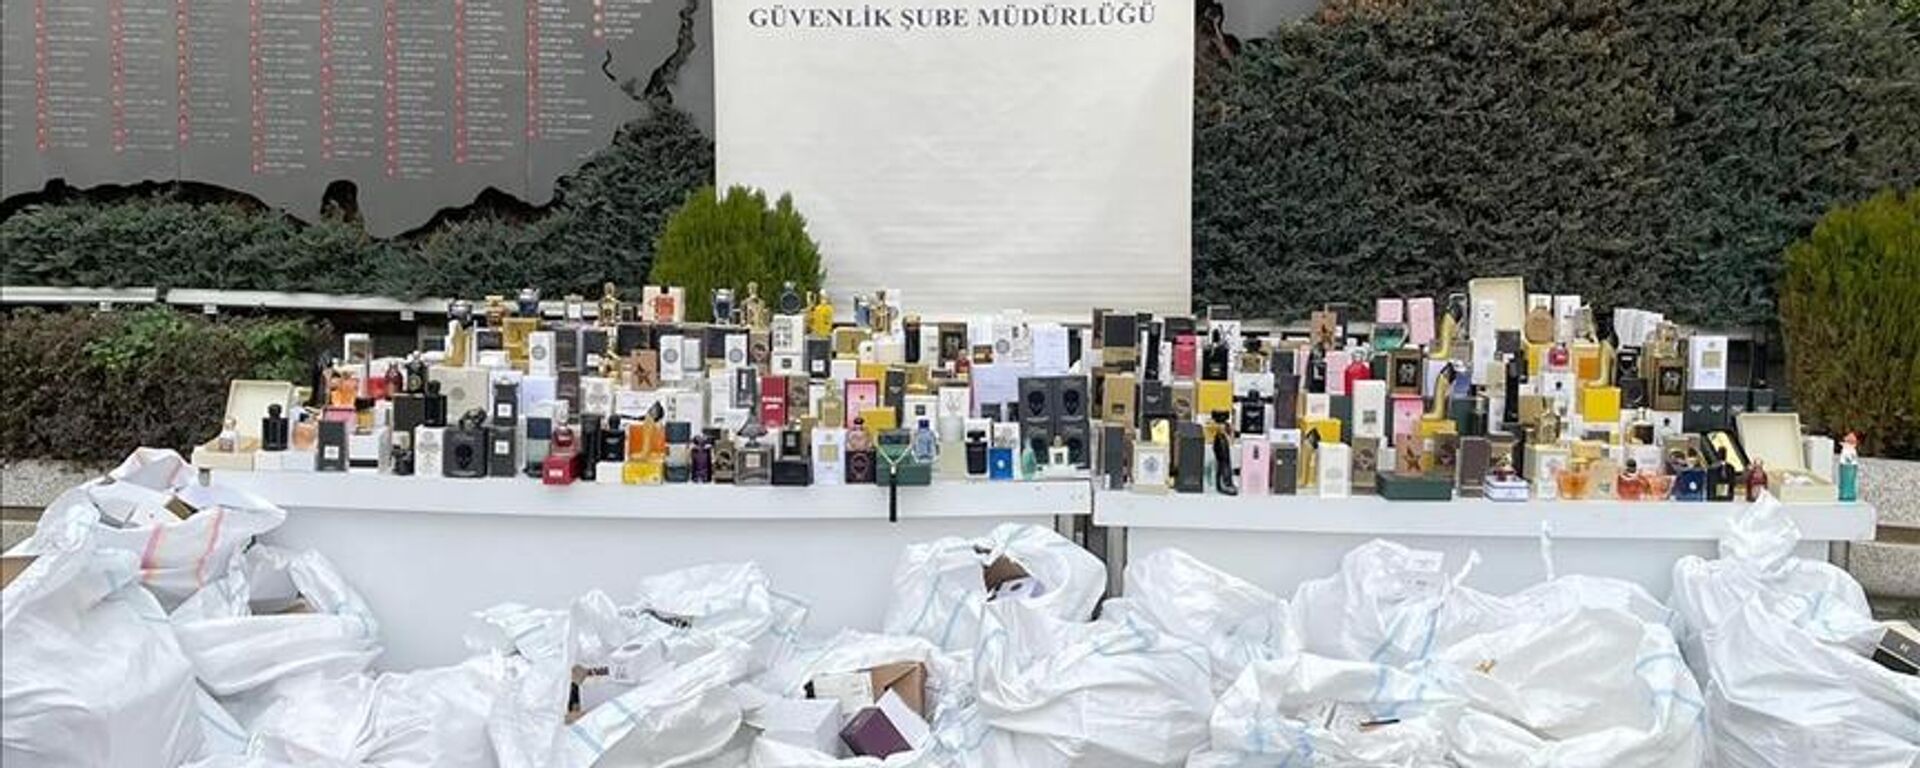 İstanbul’da 70 bin şişe sahte parfüm ele geçirildi - Sputnik Türkiye, 1920, 30.12.2021